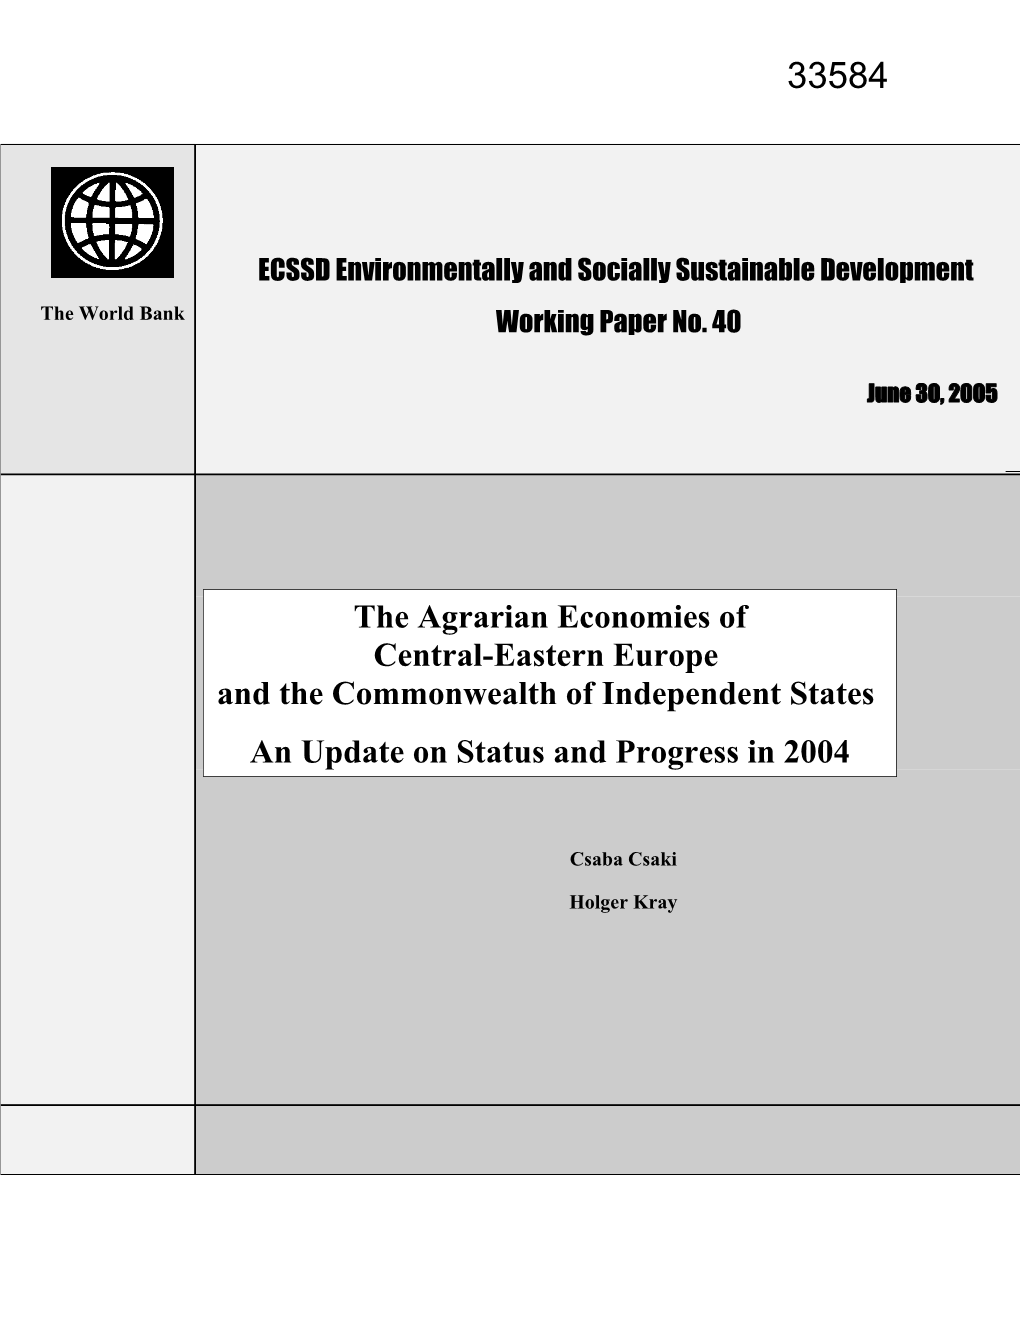 ECSSD Working Paper No